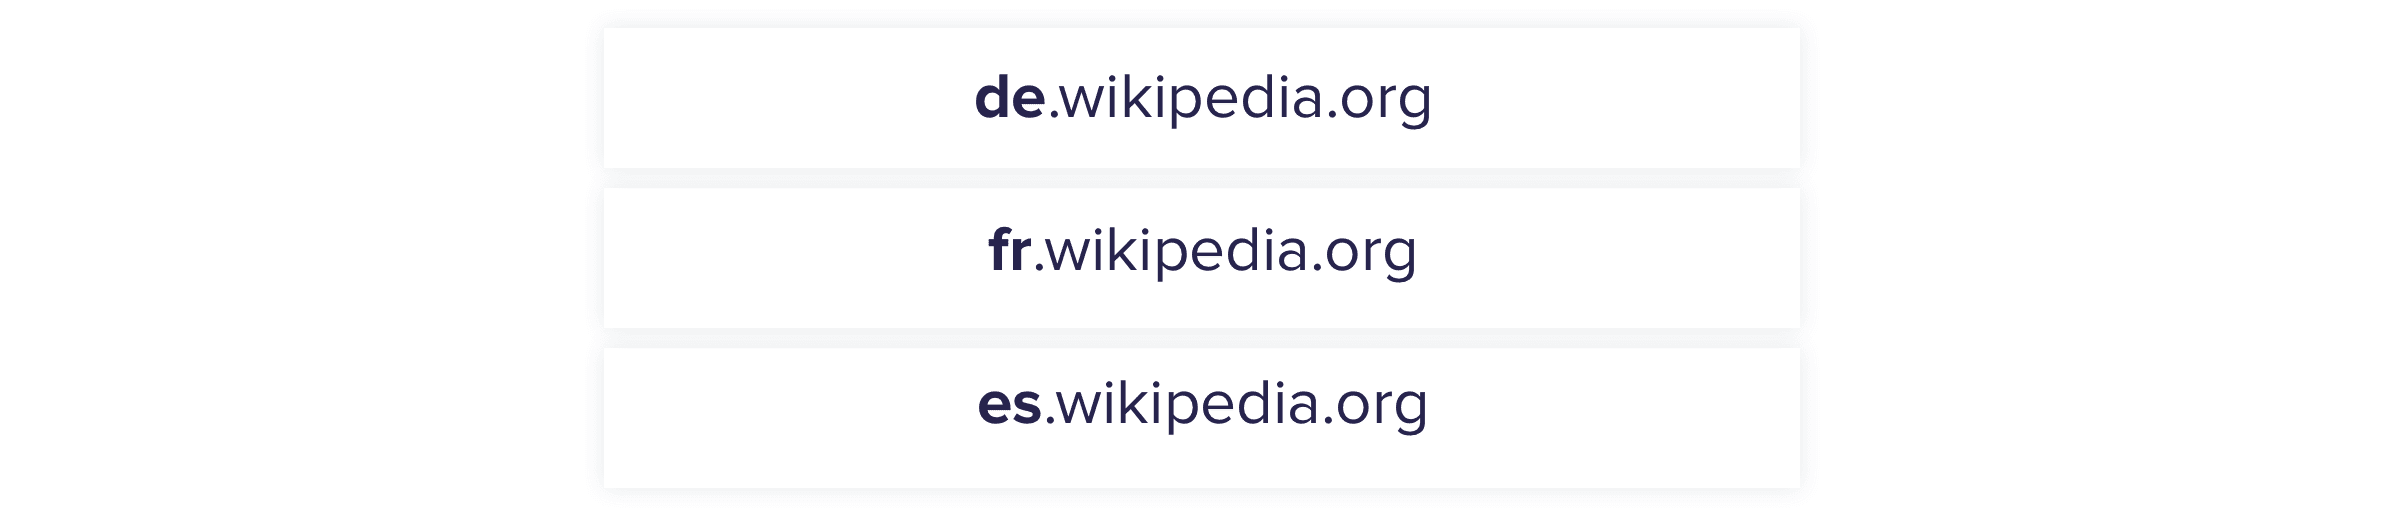 Поддомены Википедии для регионов